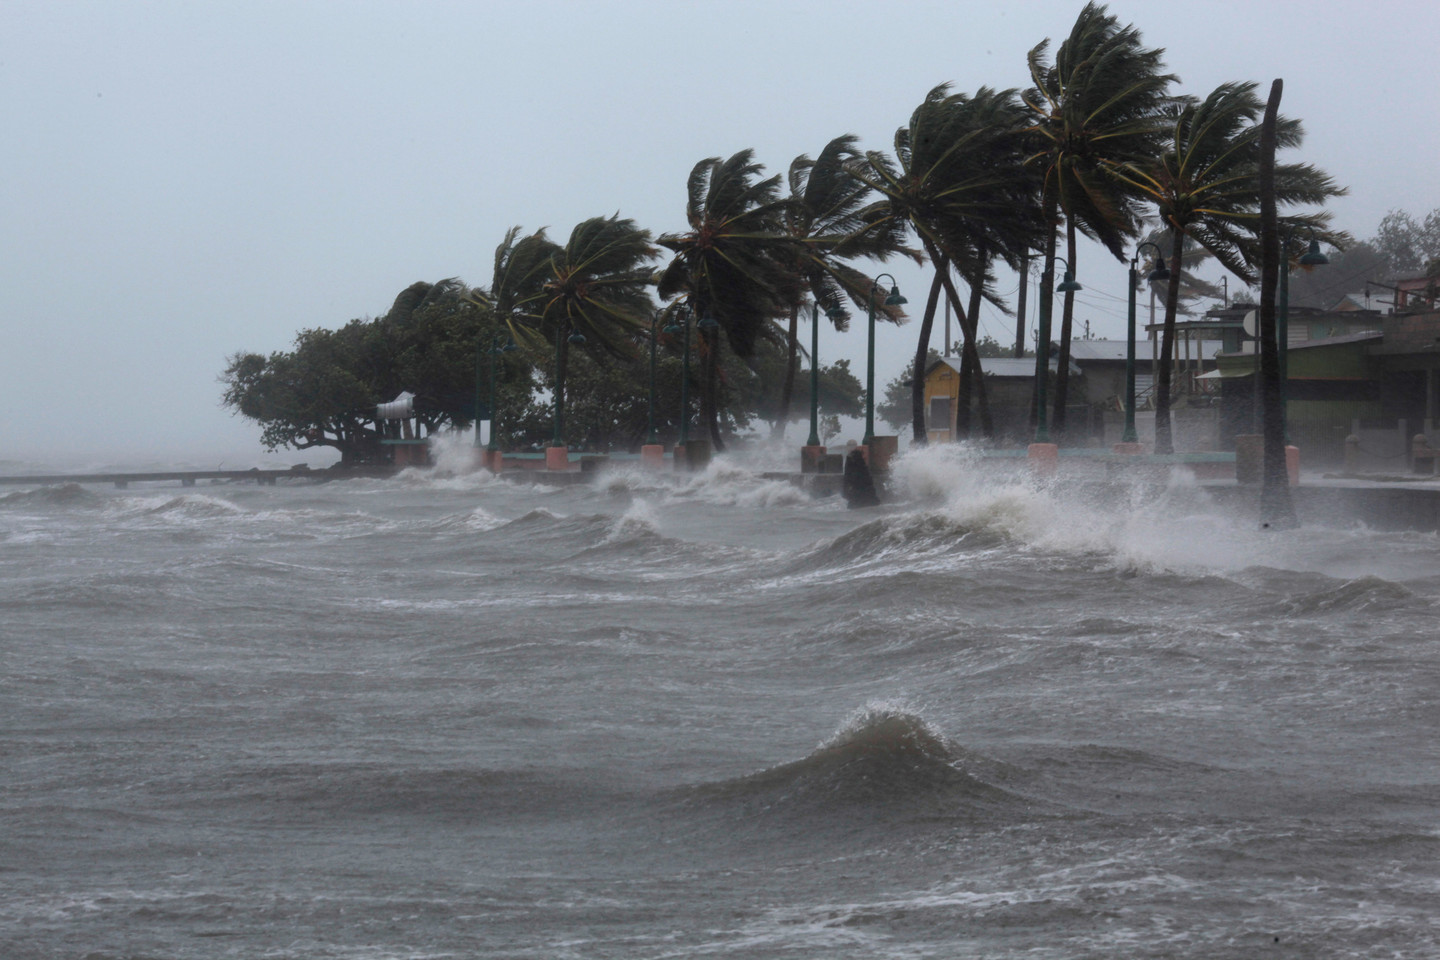 <p><span>Ураган на побережье. Фото &copy; REUTERS/Alvin Baez</span></p>
<div>
<div></div>
</div>